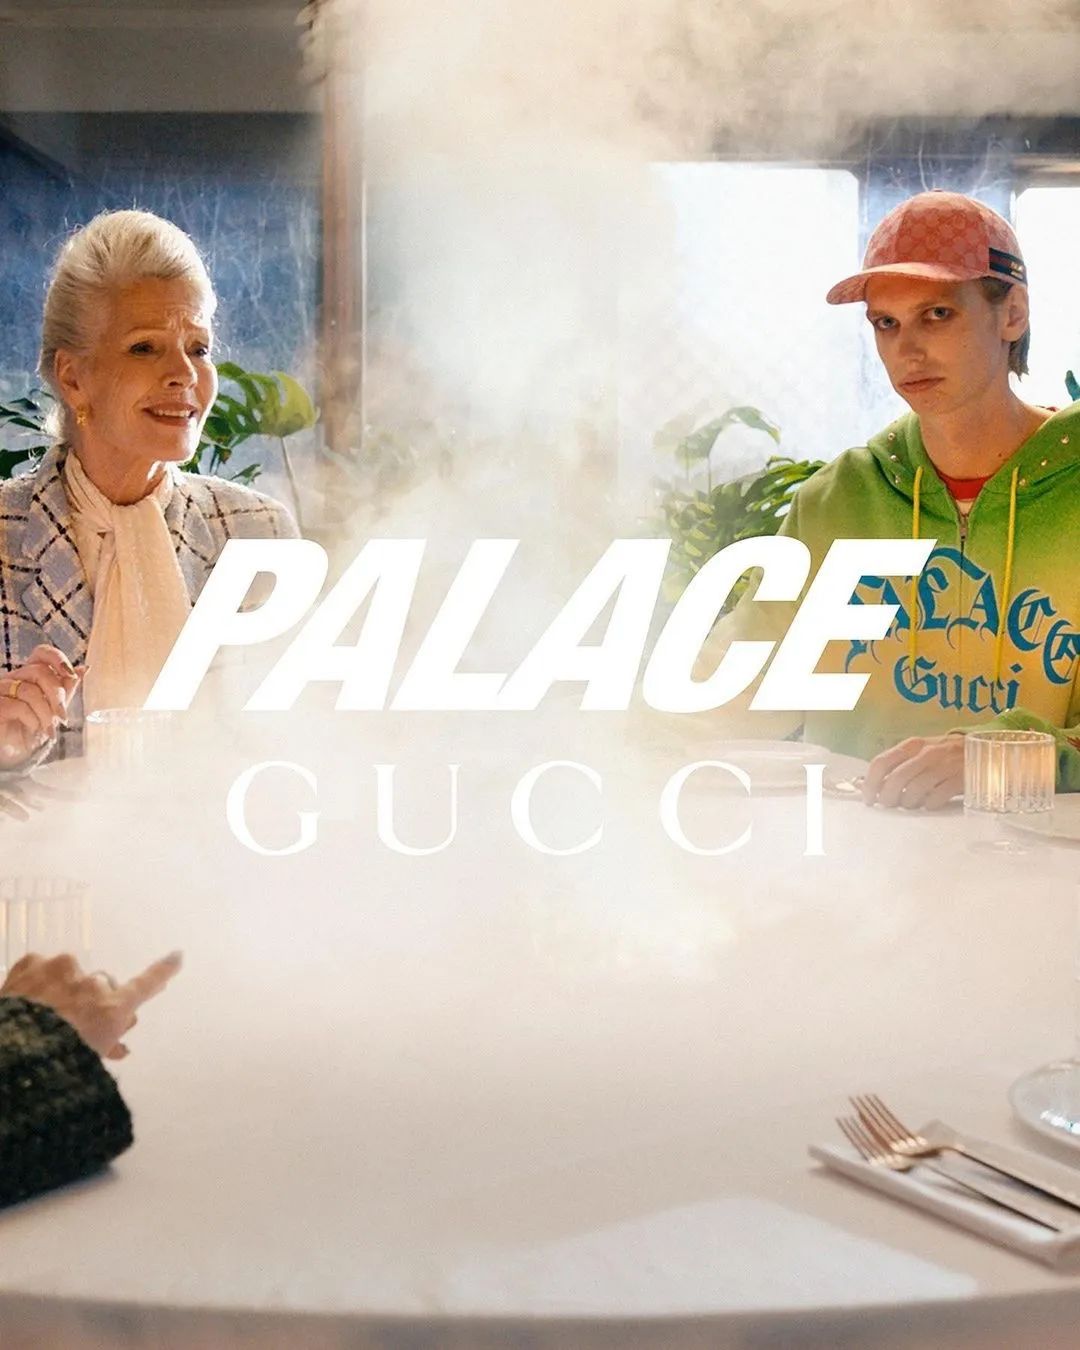 今天开抢！Gucci古驰 x Palace联名完整清单曝出，附发售指南！